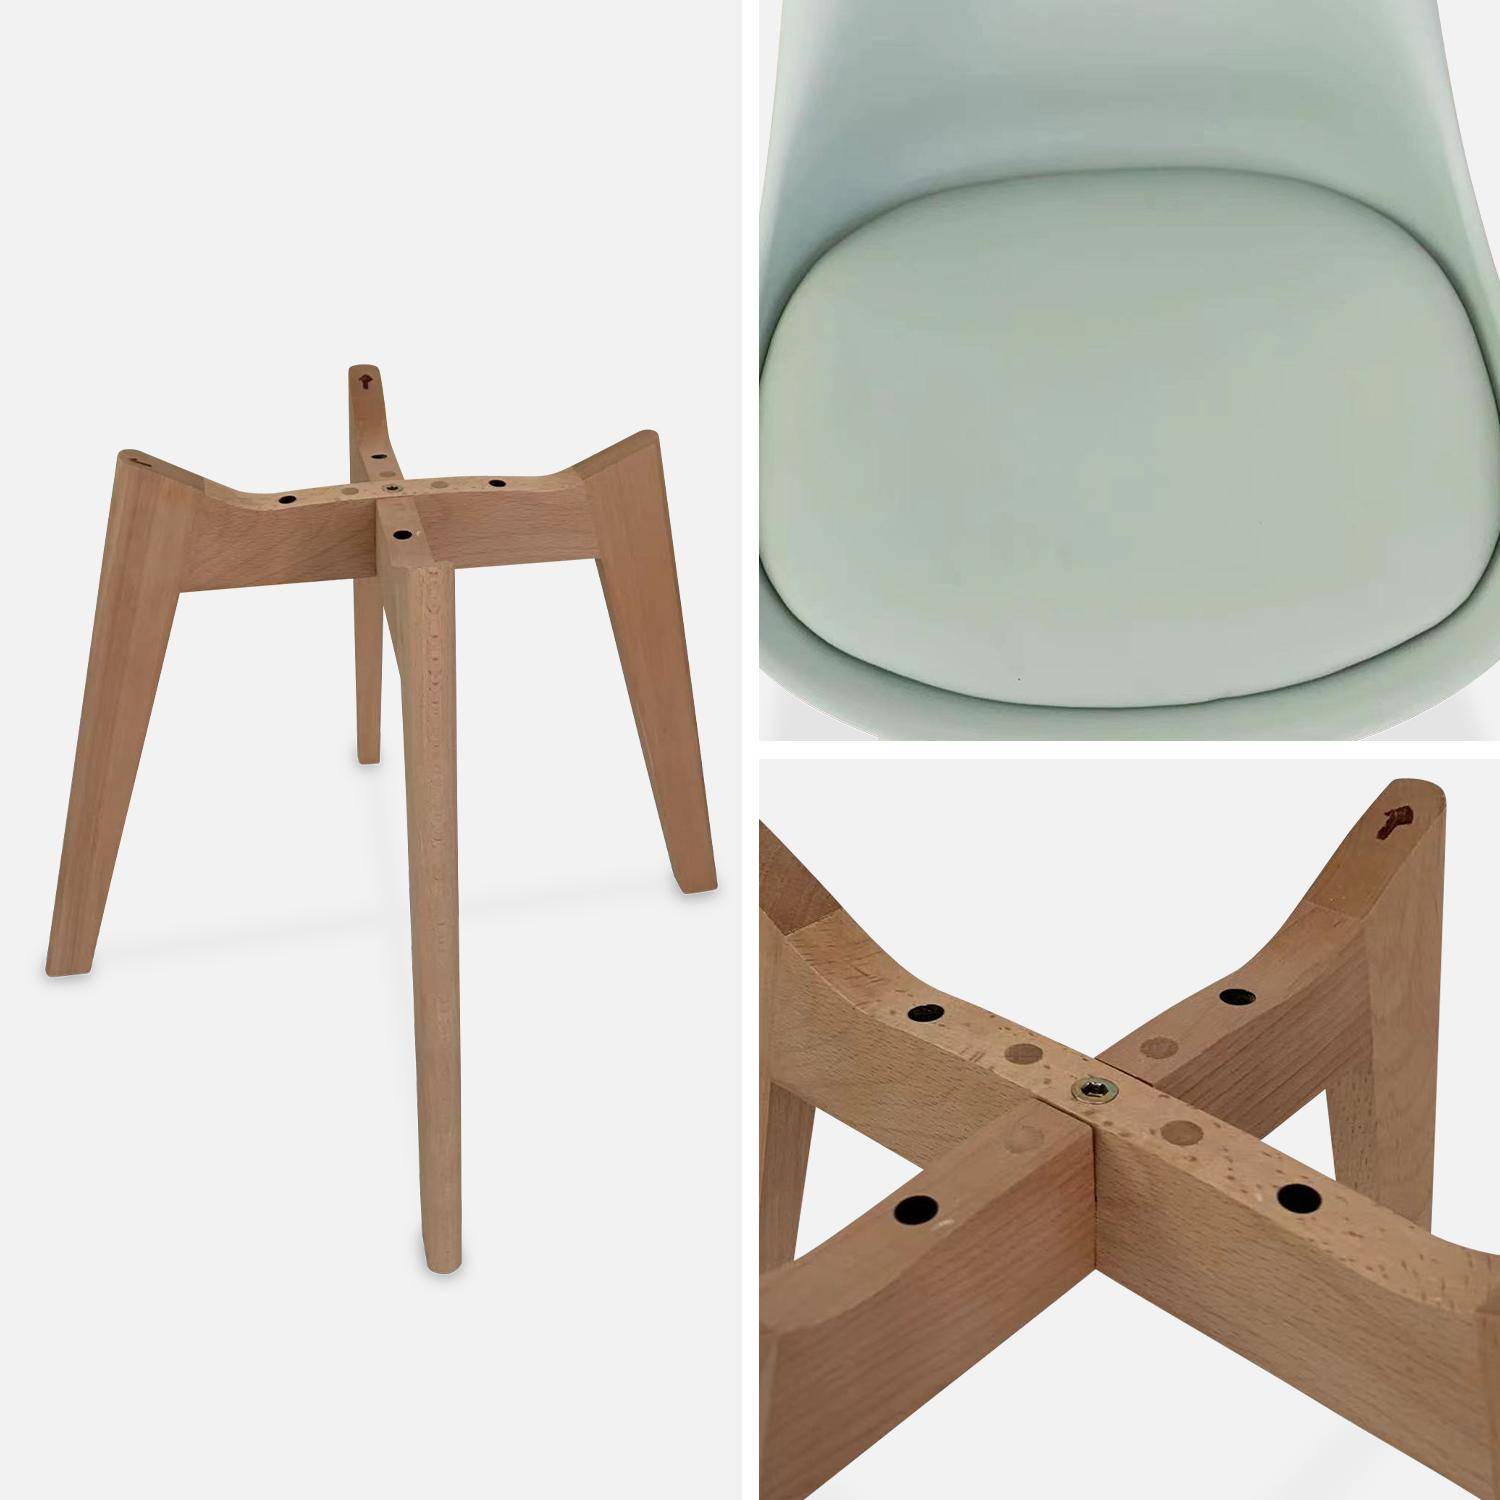 Lot de 4 chaises scandinaves, pieds bois de hêtre, chaises 1 place, vert céladon Photo7